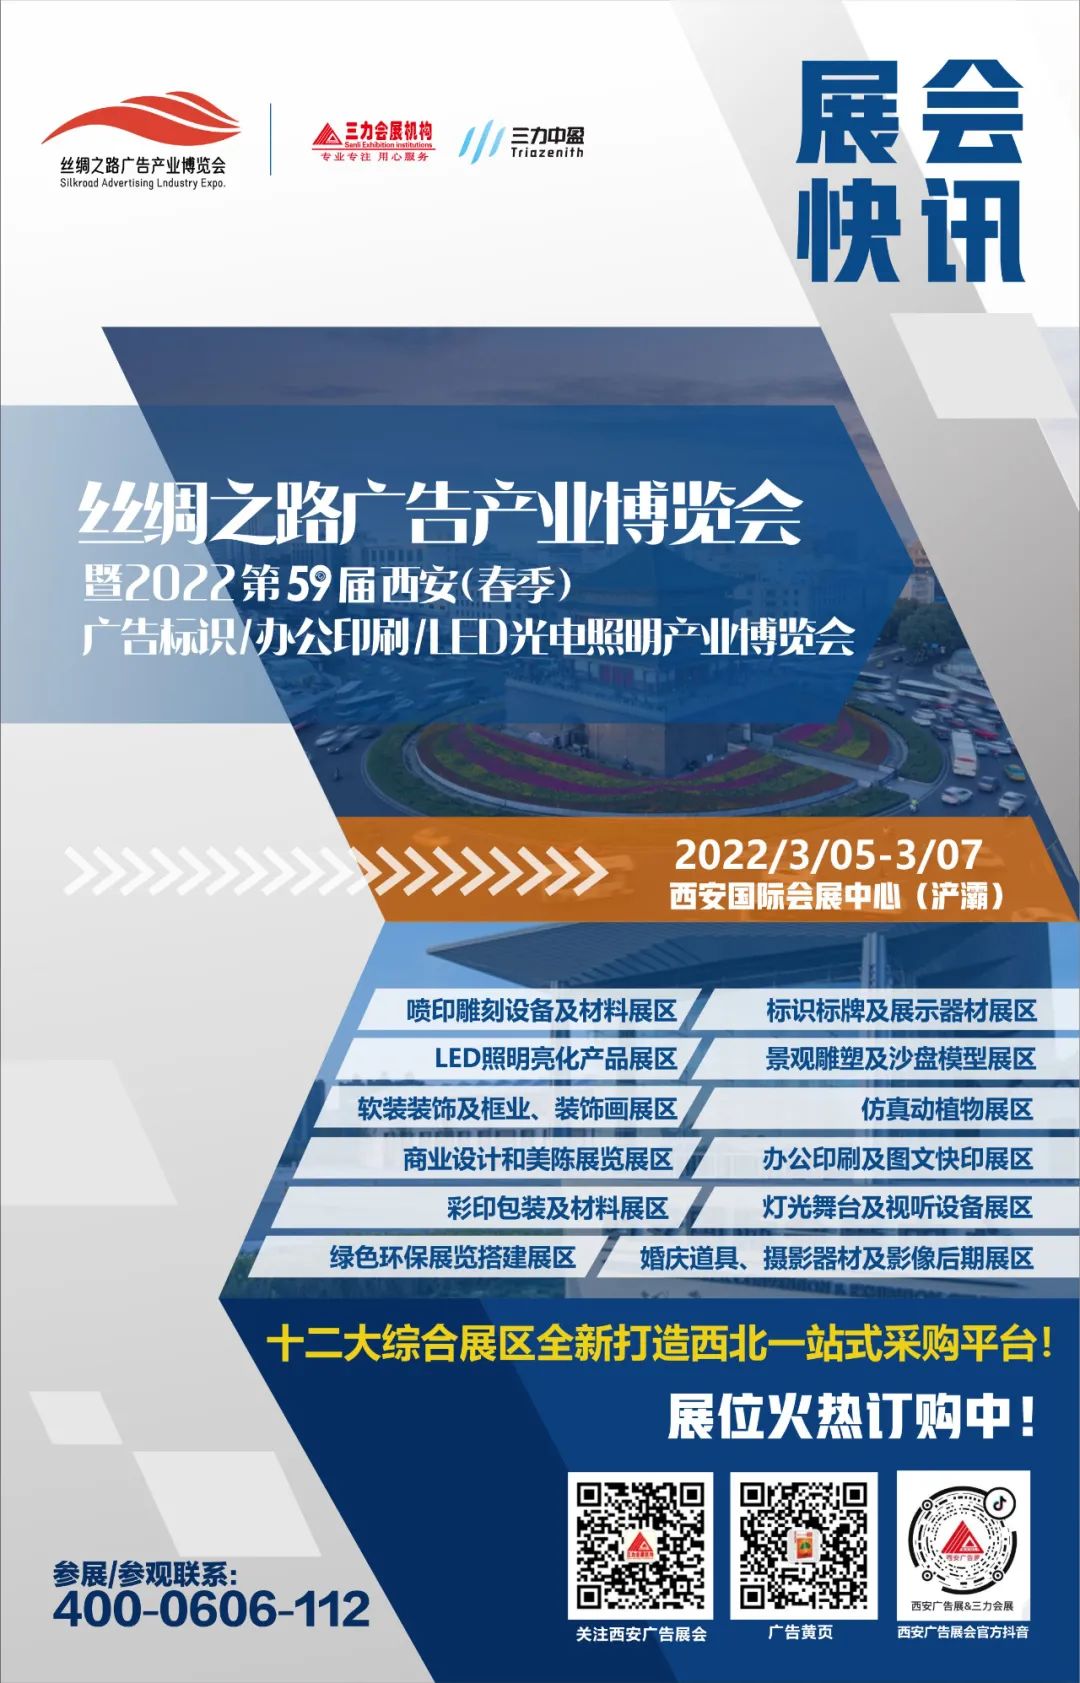 2022年3月5-7日 西安广告展征程再起 为梦集结！